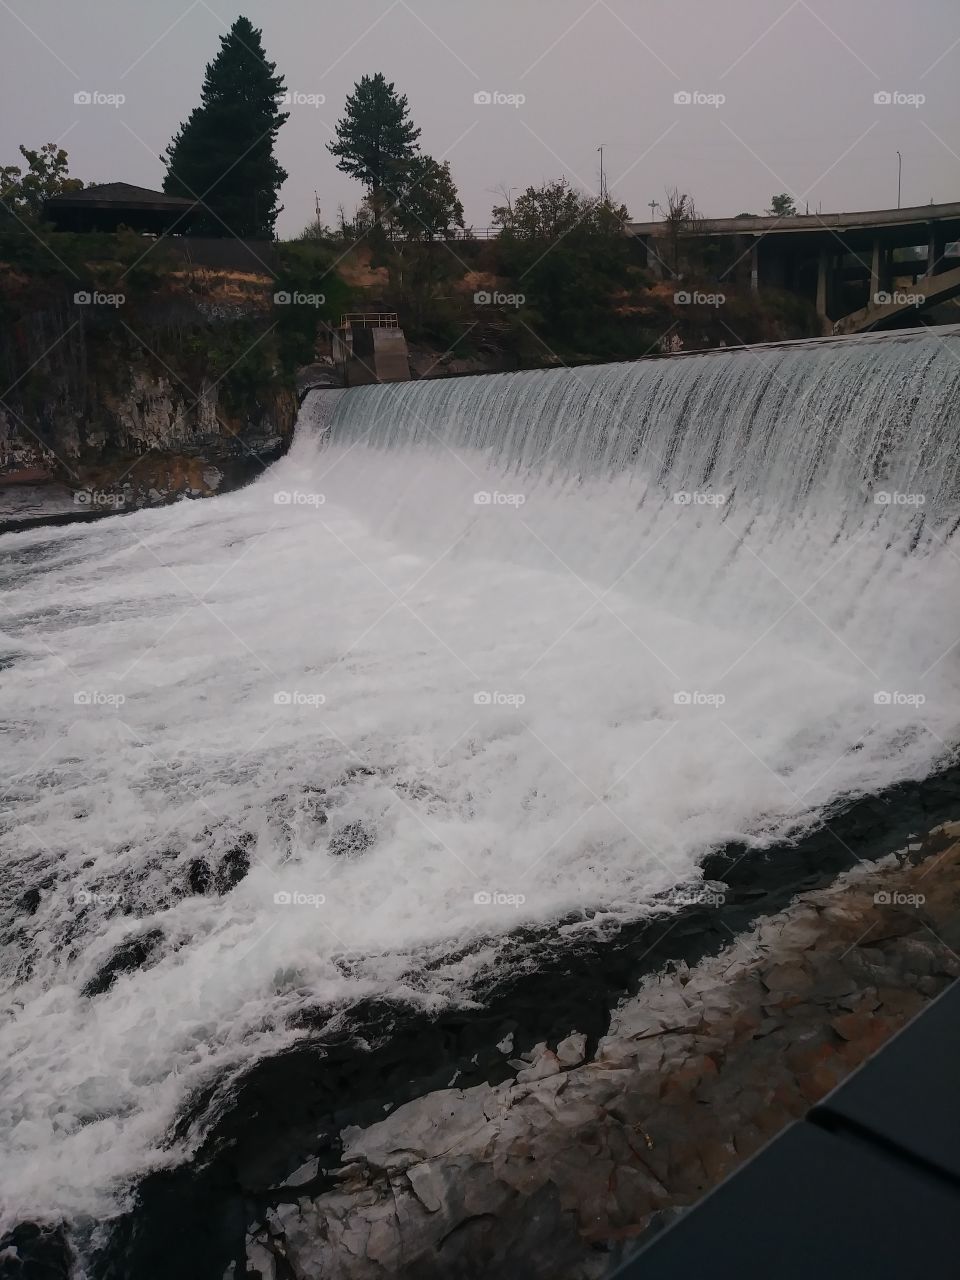 Water is amazing. Spokane, WA